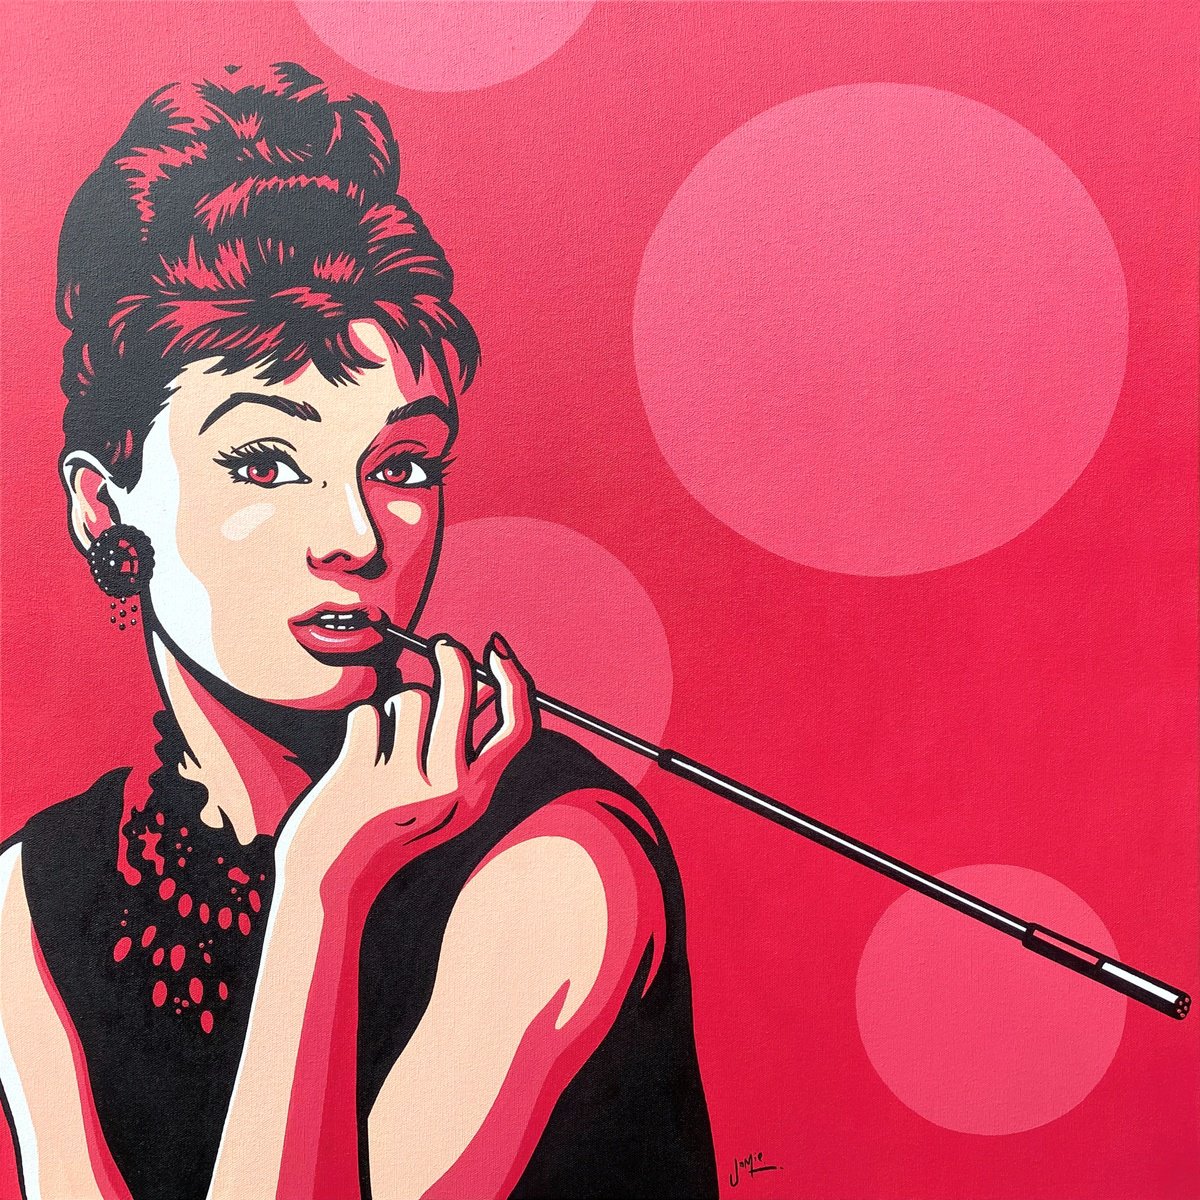 Audrey Hepburn on Hot Pink by Jamie Lee